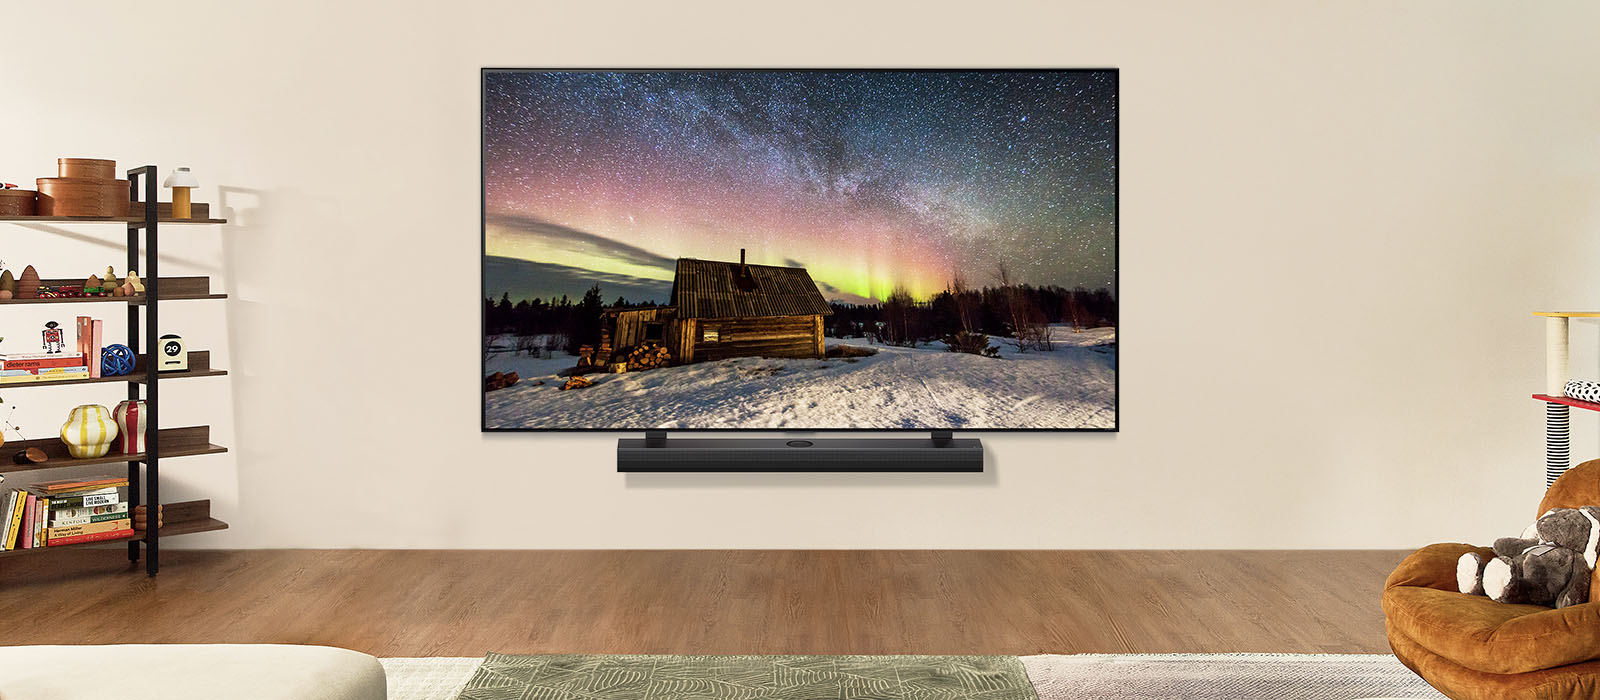 LG TV ja LG Soundbar modernissa olohuoneessa päivällä. Aurora borealis -näyttökuva näytetään ihanteellisilla kirkkaustasoilla.